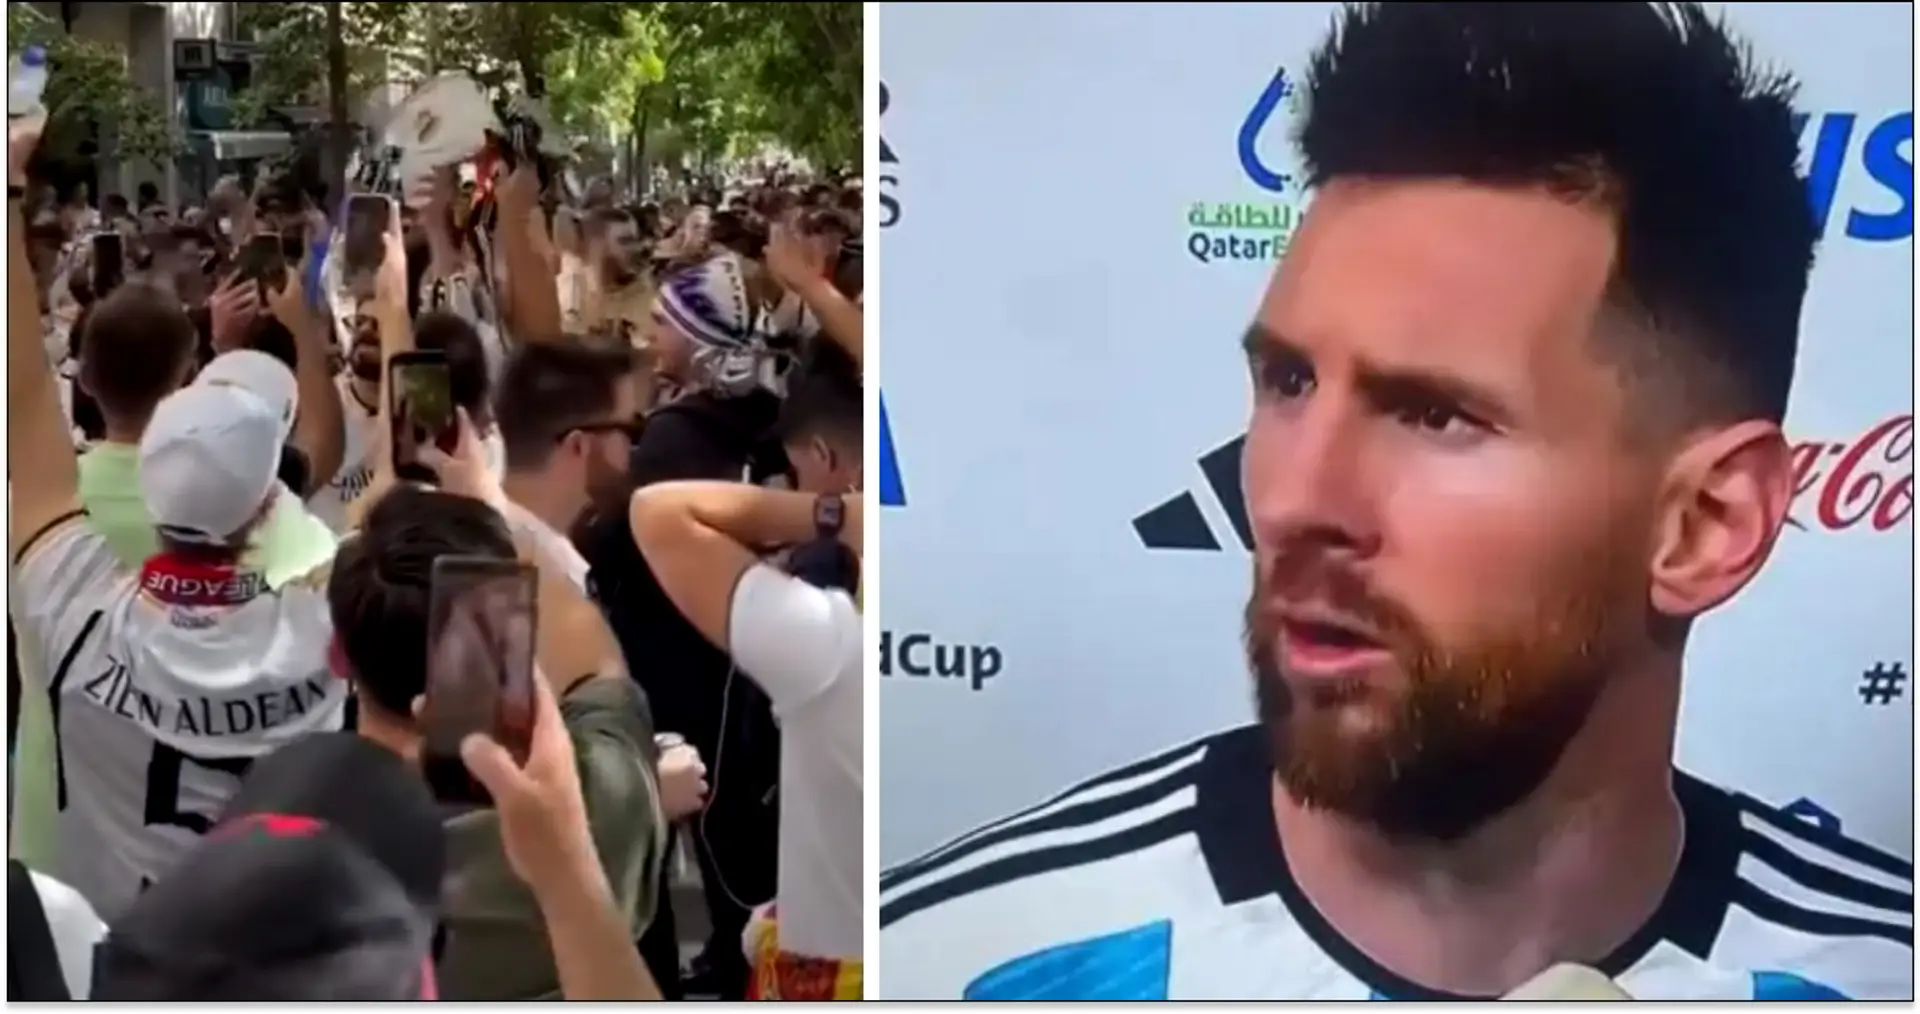 Nunca le olvidarán: los aficionados del Madrid corean insultos a Leo Messi antes del partido vs Bayern